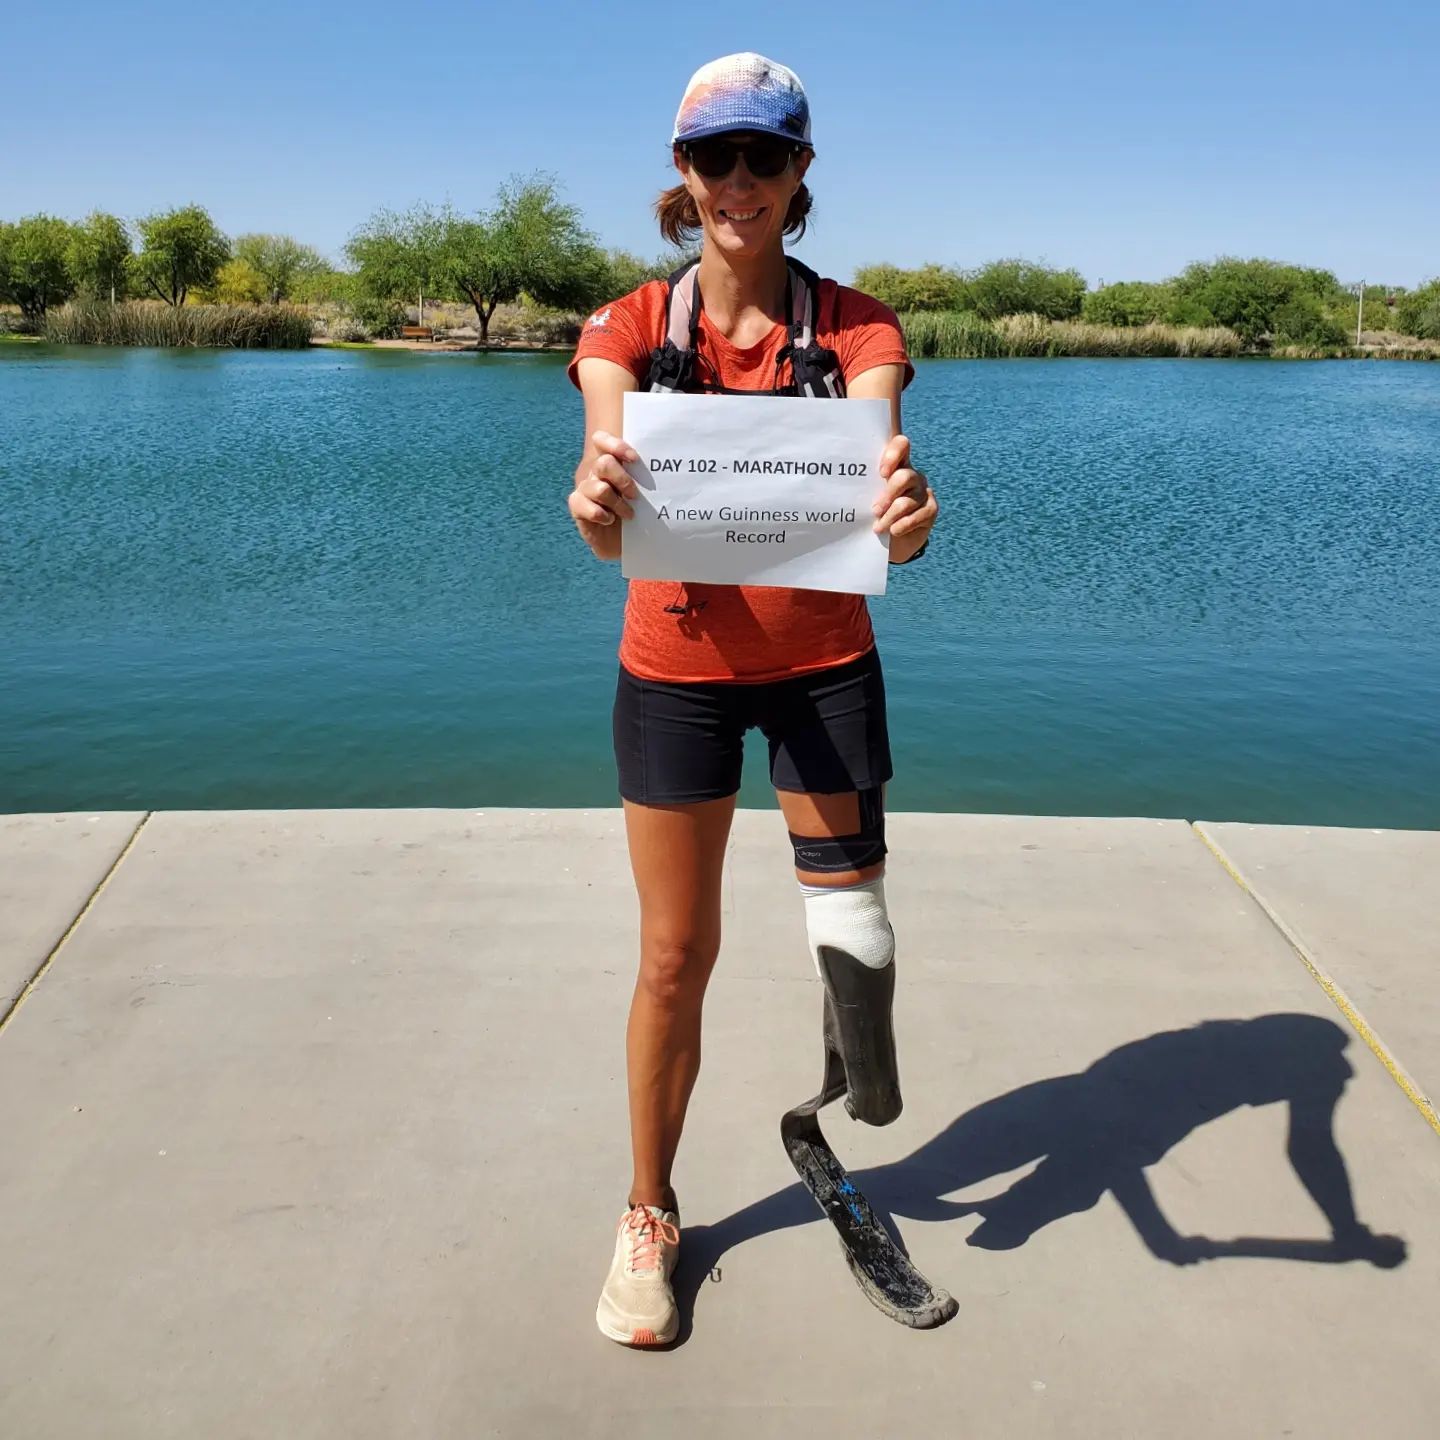 Con una prótesis en la pierna, corrió 42 kilómetros por más de tres meses superando todos los obstáculos. Foto: gentileza.